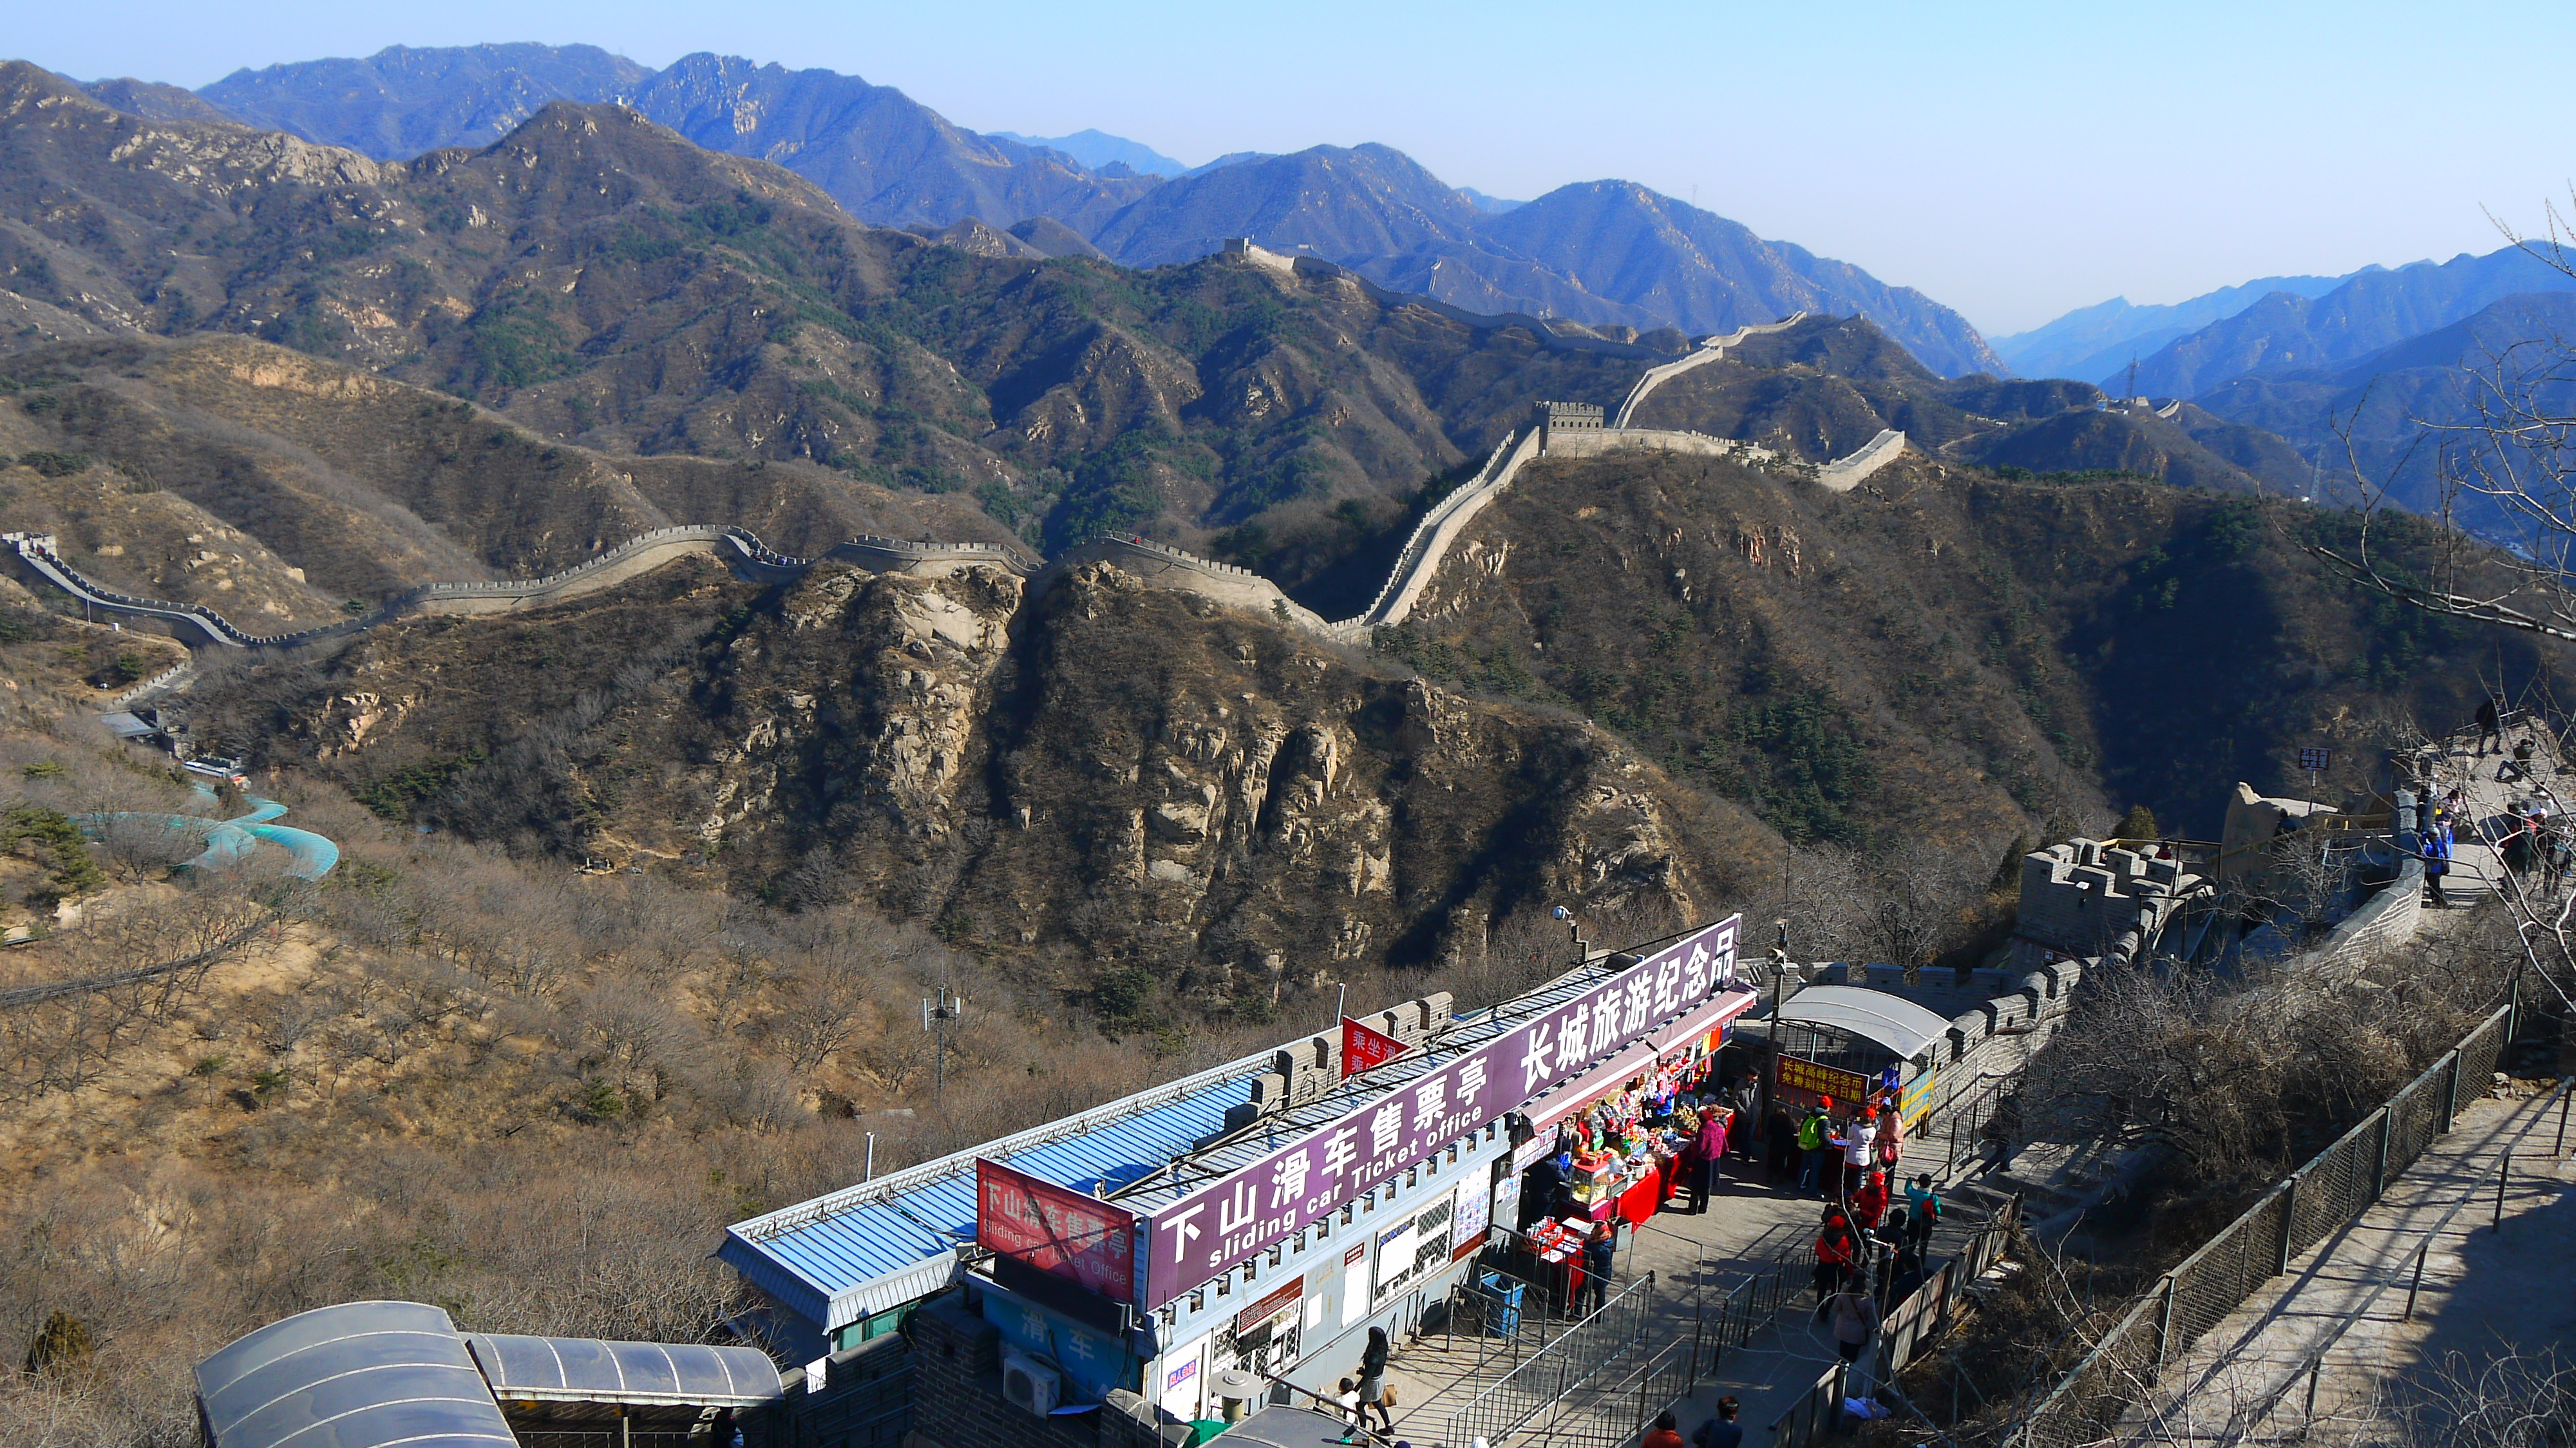 Se en af verdens 7 vidundere i din rundrejse i Kina